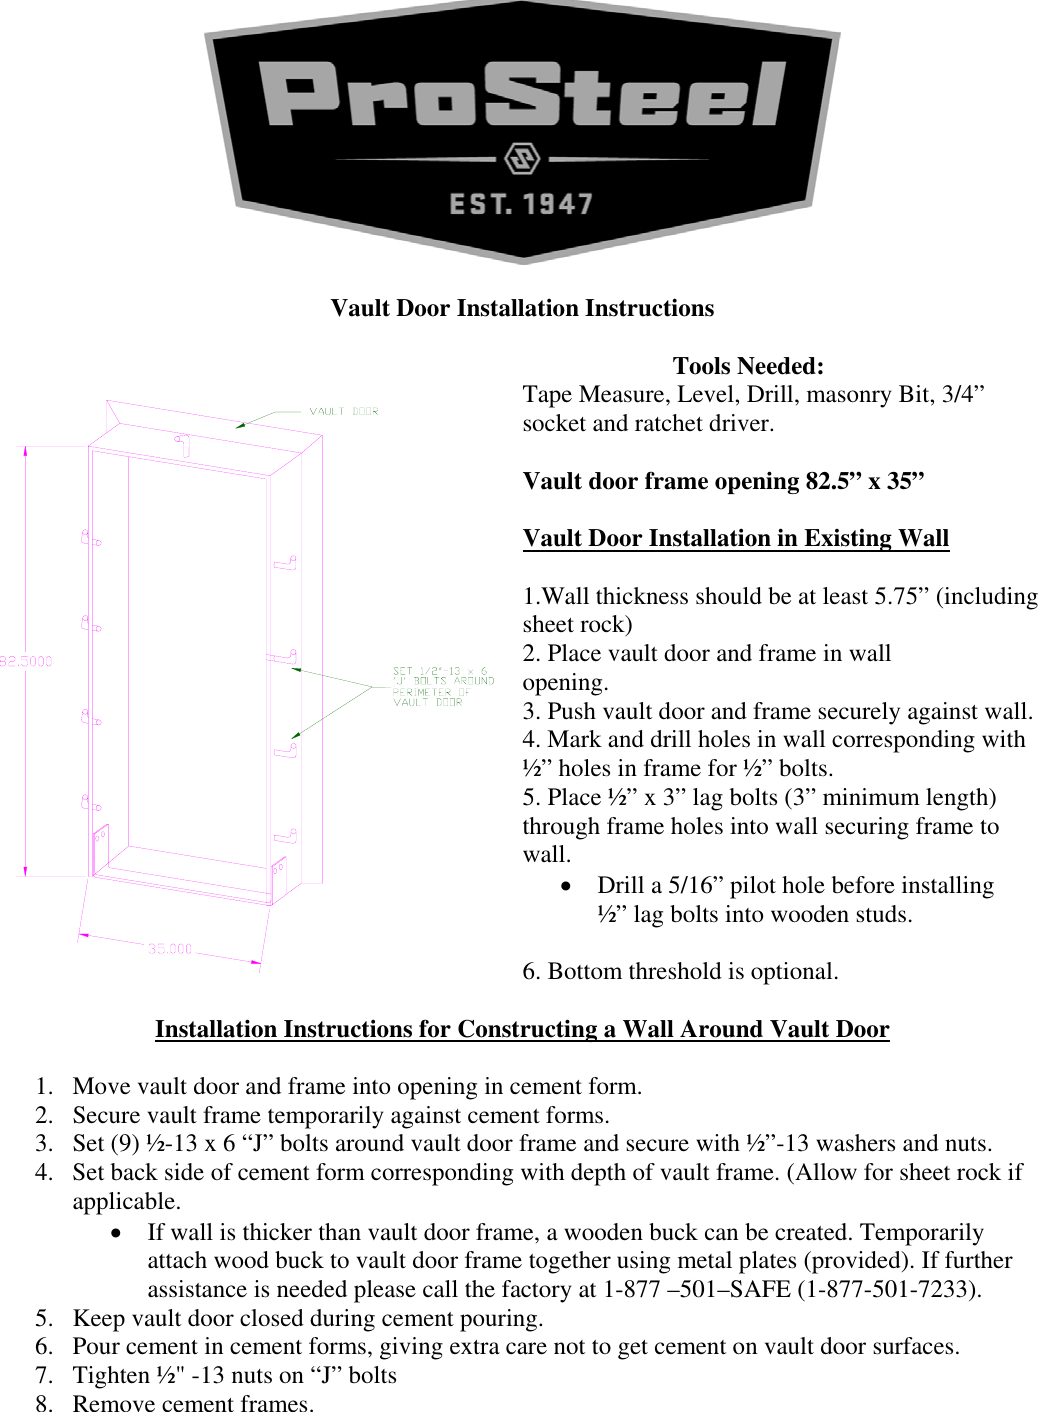 Browning Vault Door Owners Manual